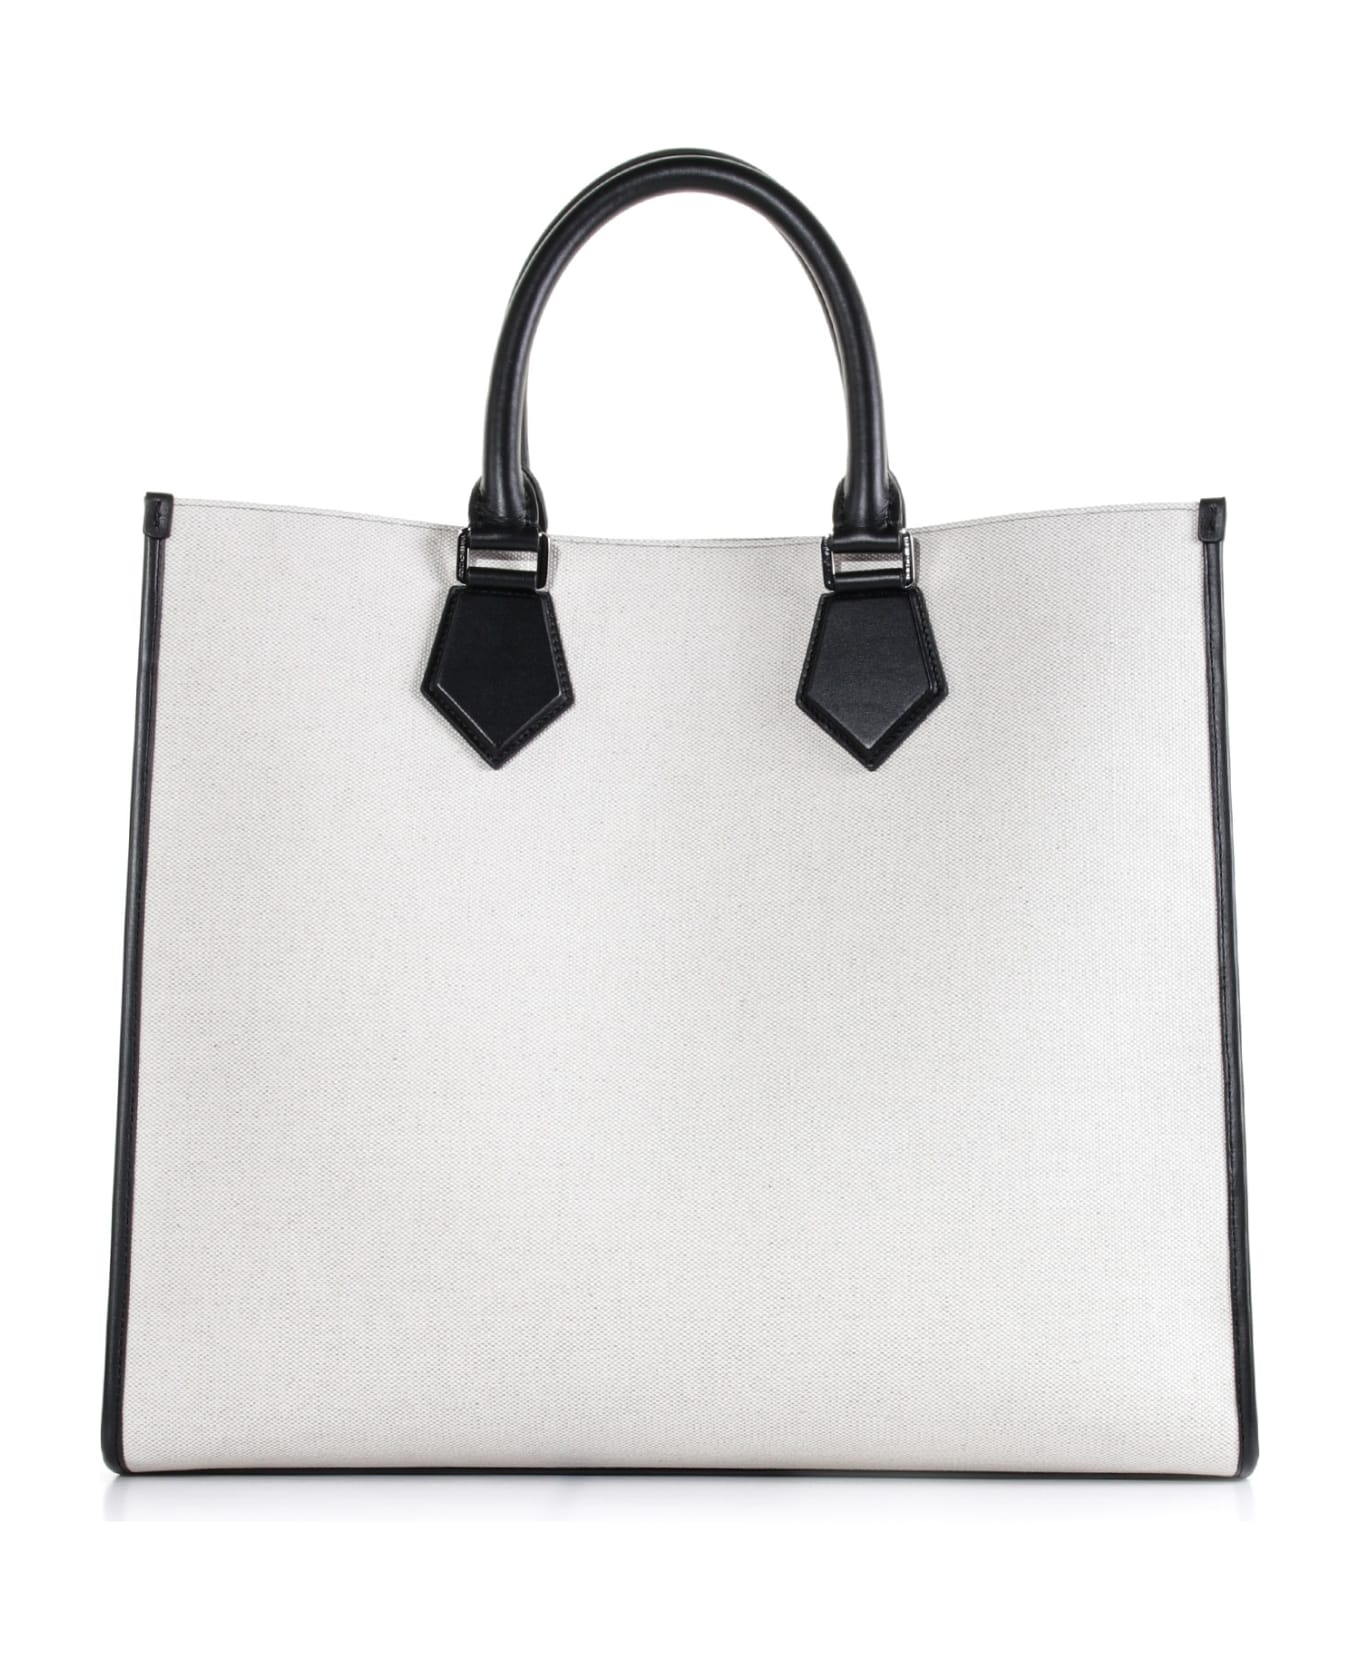 Dolce & Gabbana Canvas Shopping Bag - AVORIO/NERO